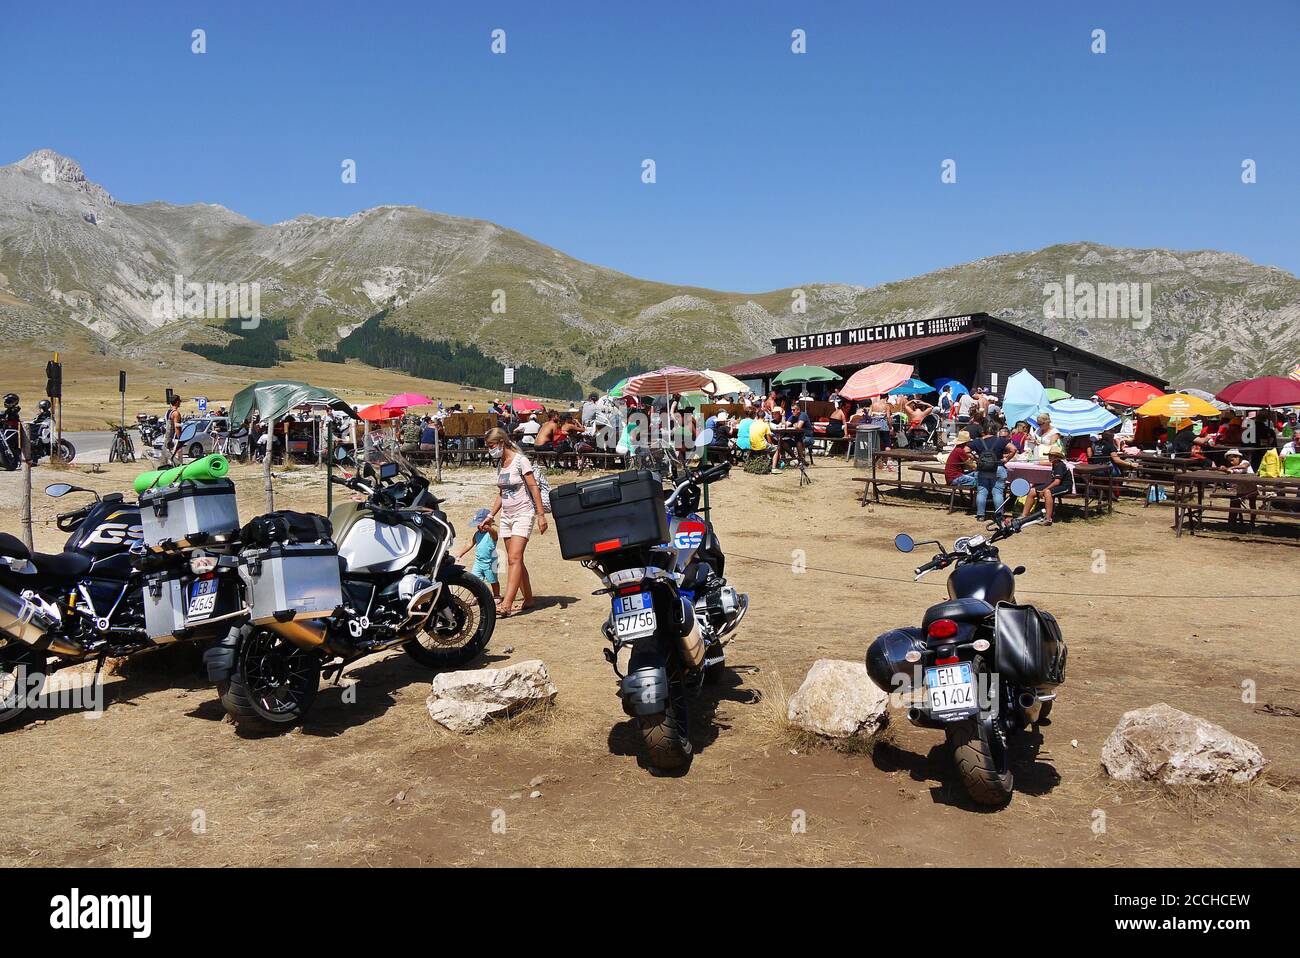 Moto parcheggiate al Ristoro Mucciante sul campo Imperatore nel Gran Sasso D'Italia, Abruzzo, Italia. Foto Stock